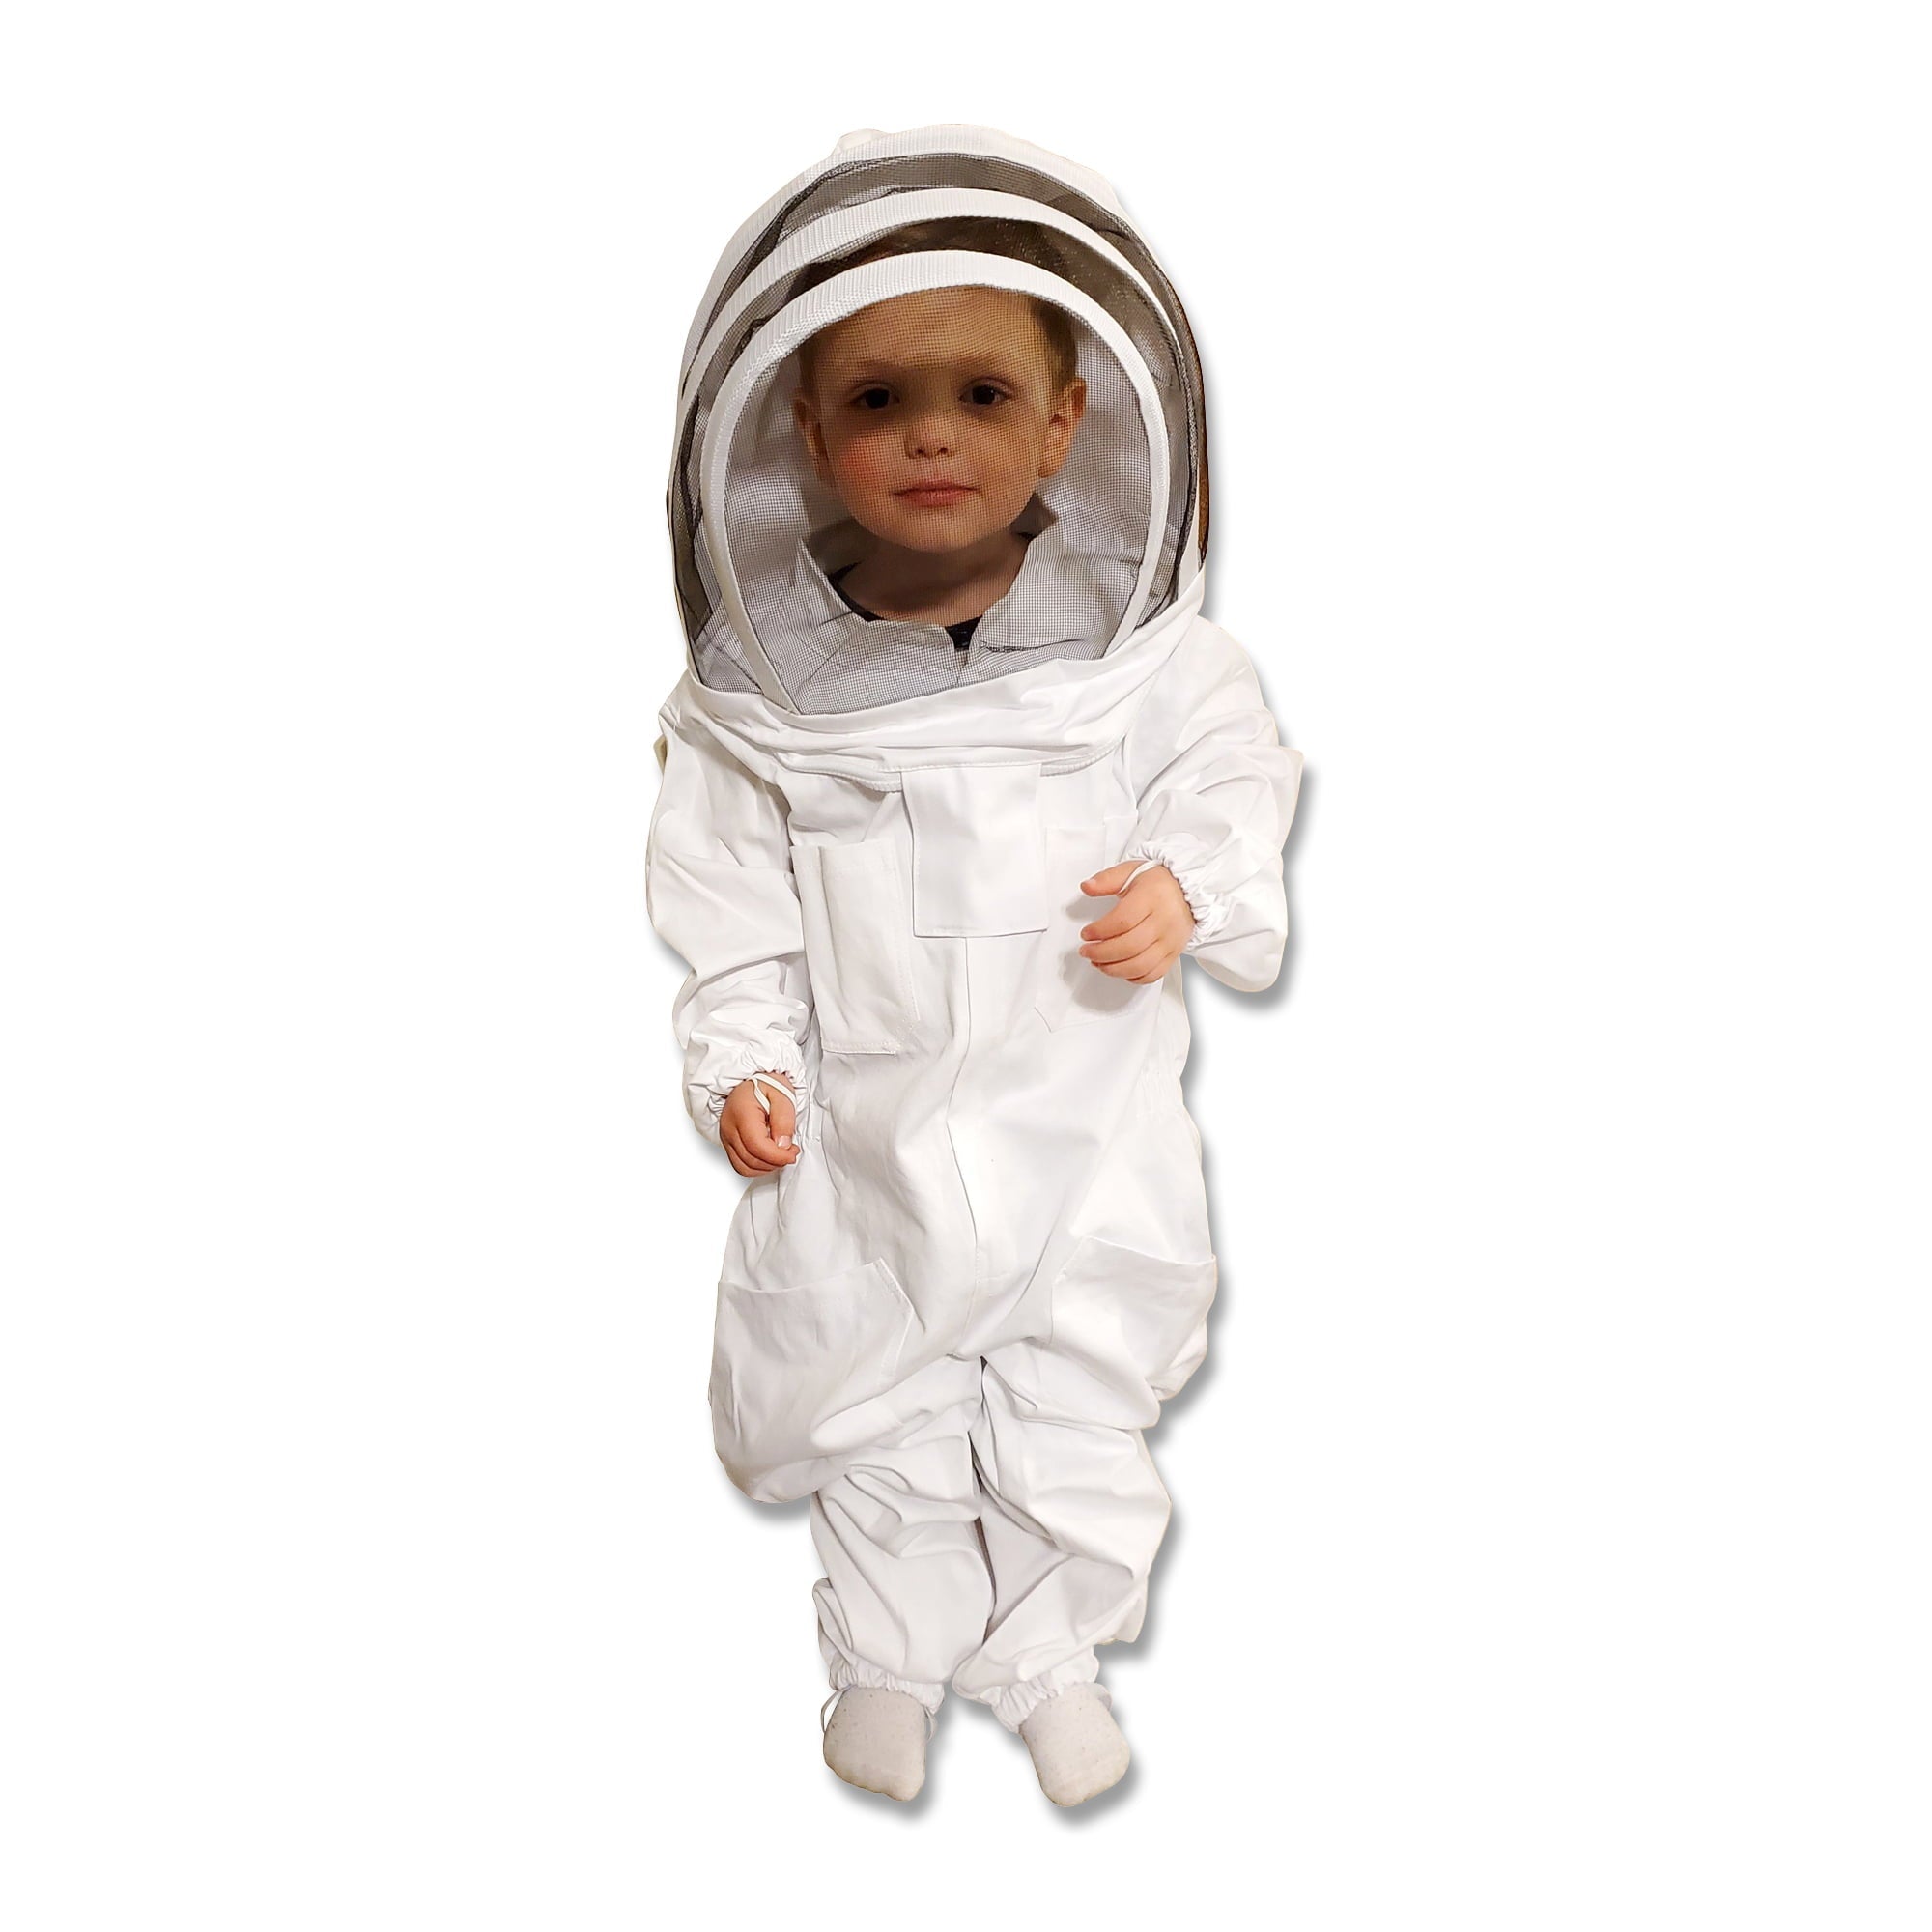 Kids Bee Suit - Cotton For beekeeping